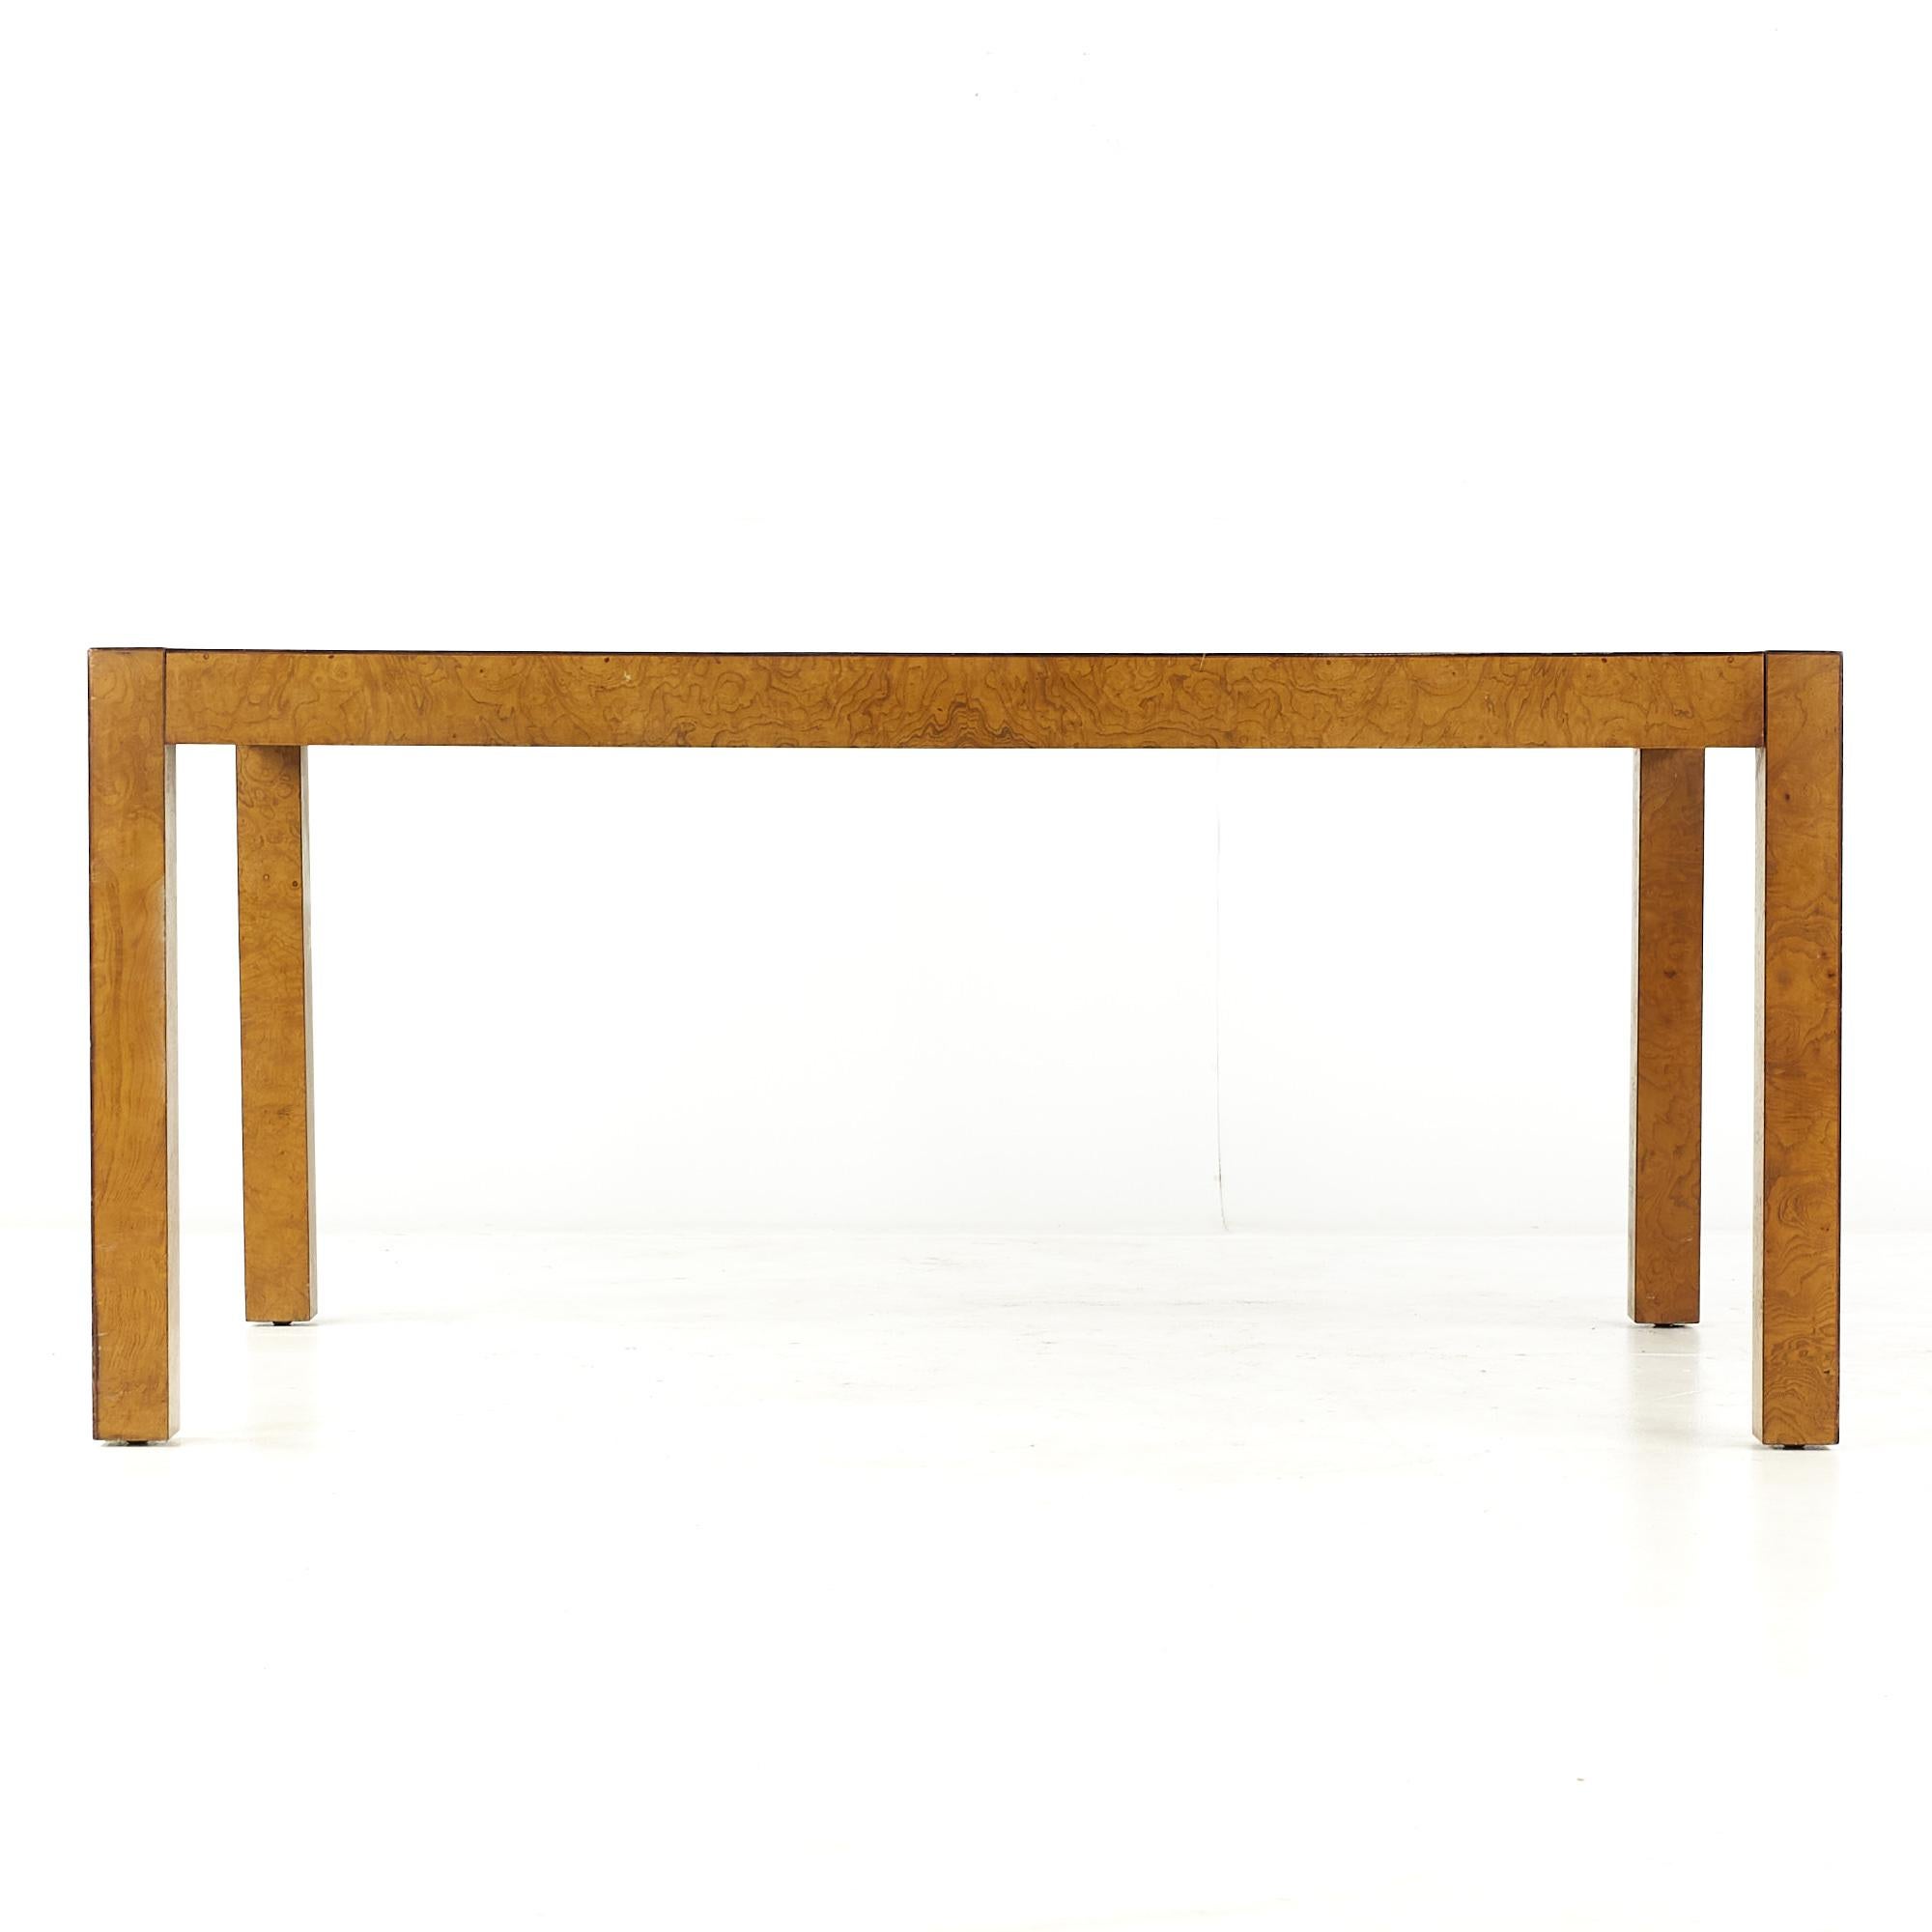 Milo Baughman Esstisch aus Wurzelholz im Stil der Mitte des Jahrhunderts.

Dieser Esstisch misst: 64 breit x 42 tief x 29 hoch, mit einem Stuhl Abstand von 25,5 Zoll.

Alle Möbelstücke sind in einem so genannten restaurierten Vintage-Zustand zu